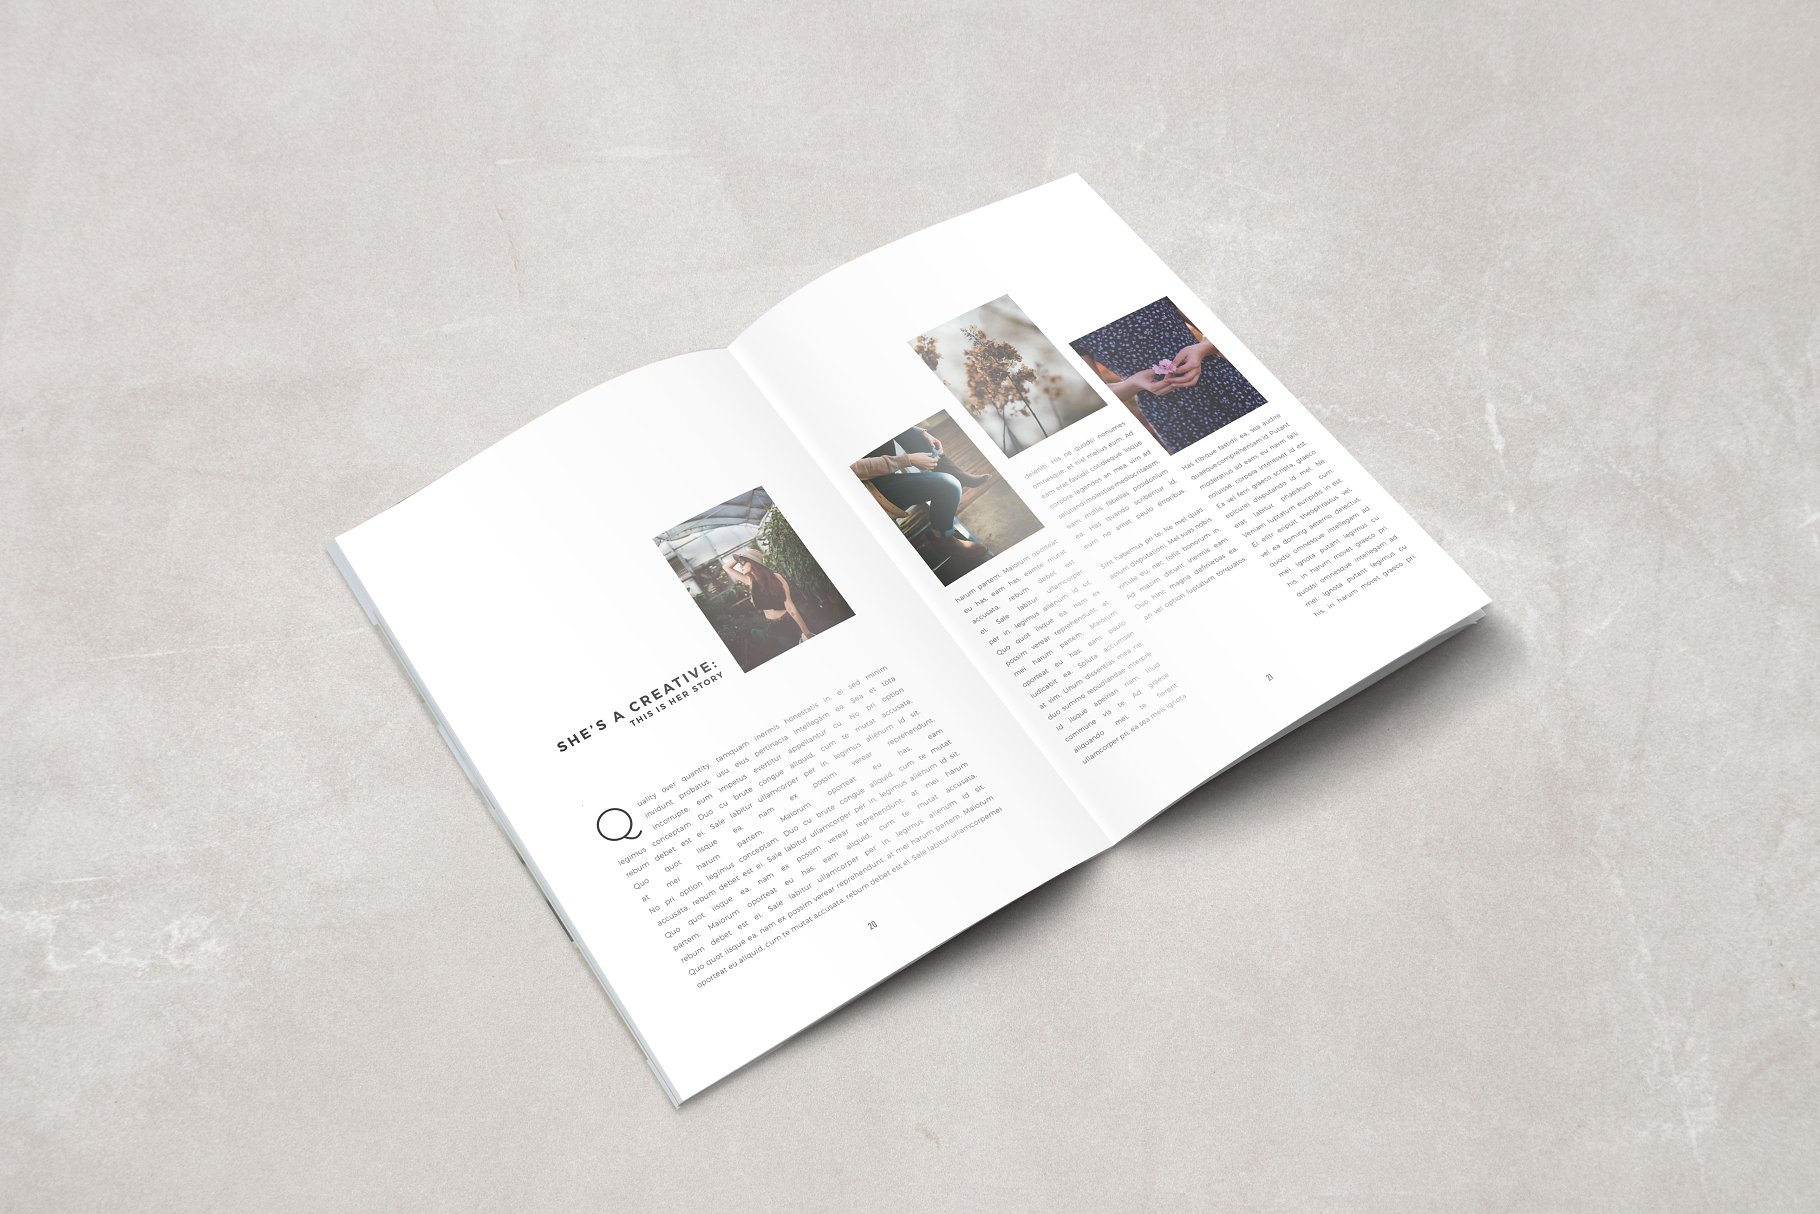 现代简约版式设计杂志模板 Graphature Magazine插图(3)